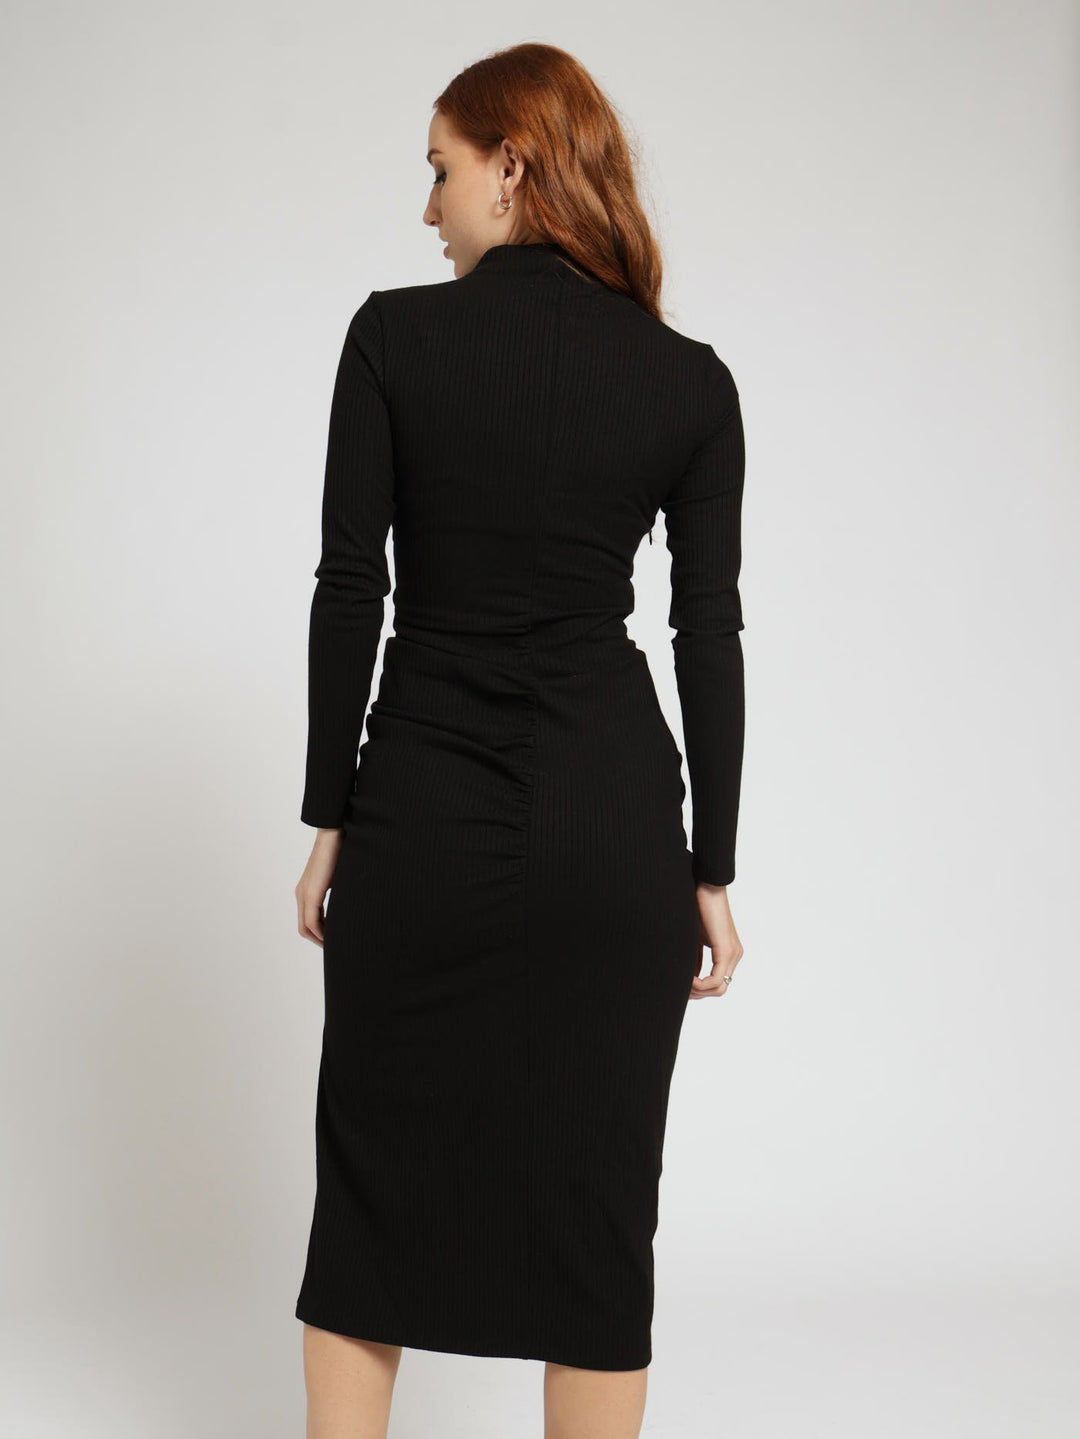 Eliana Knitwear Dress With Gathers - Black